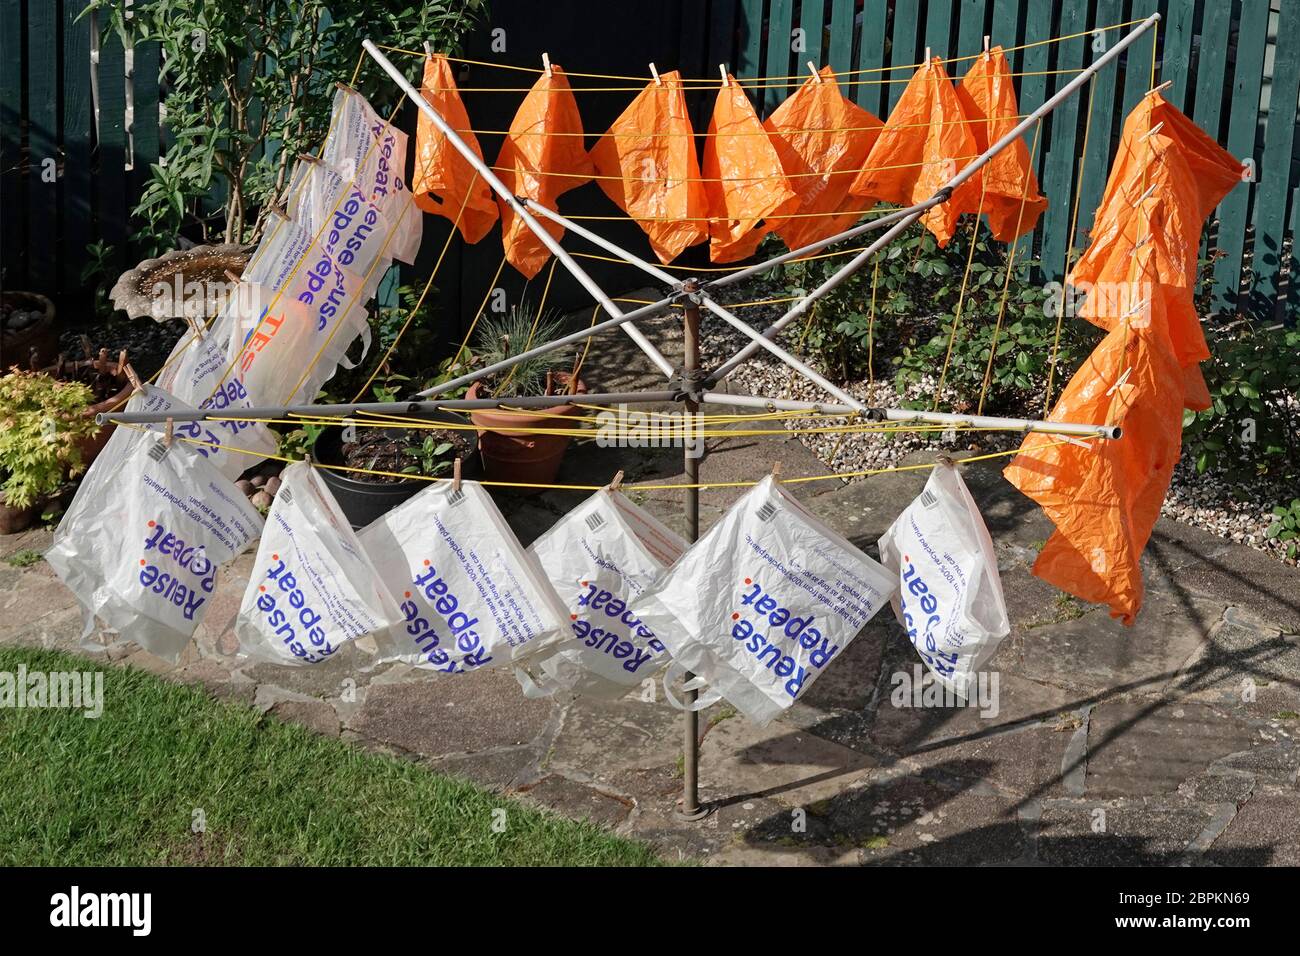 Sac de transport réutilisable en plastique recyclé de supermarché sec à l'extérieur après lavage à l'eau savonneuse coronavirus précaution fourni avec livraison en ligne de shopping Royaume-Uni Banque D'Images